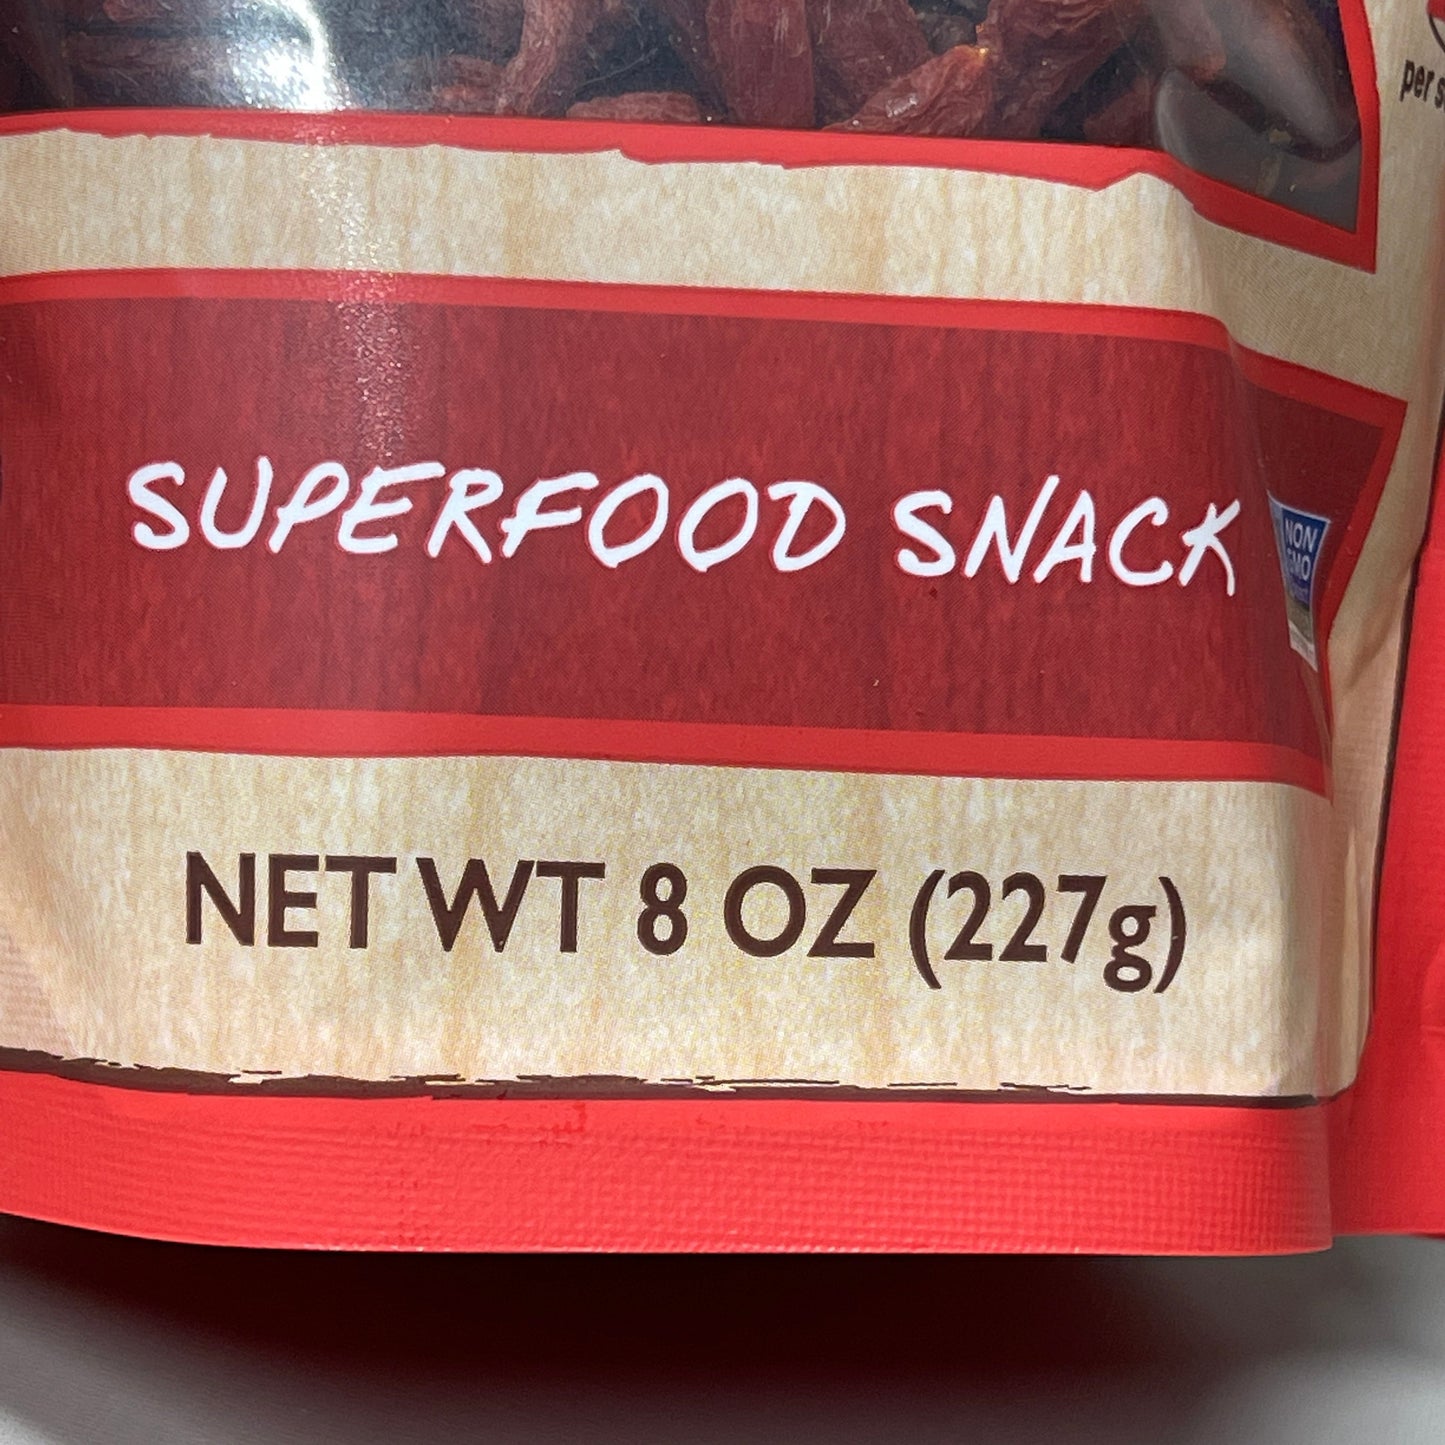 NATIERRA 3PK Nature & Earth Goji Berries Super Food Snack 8 oz (New)